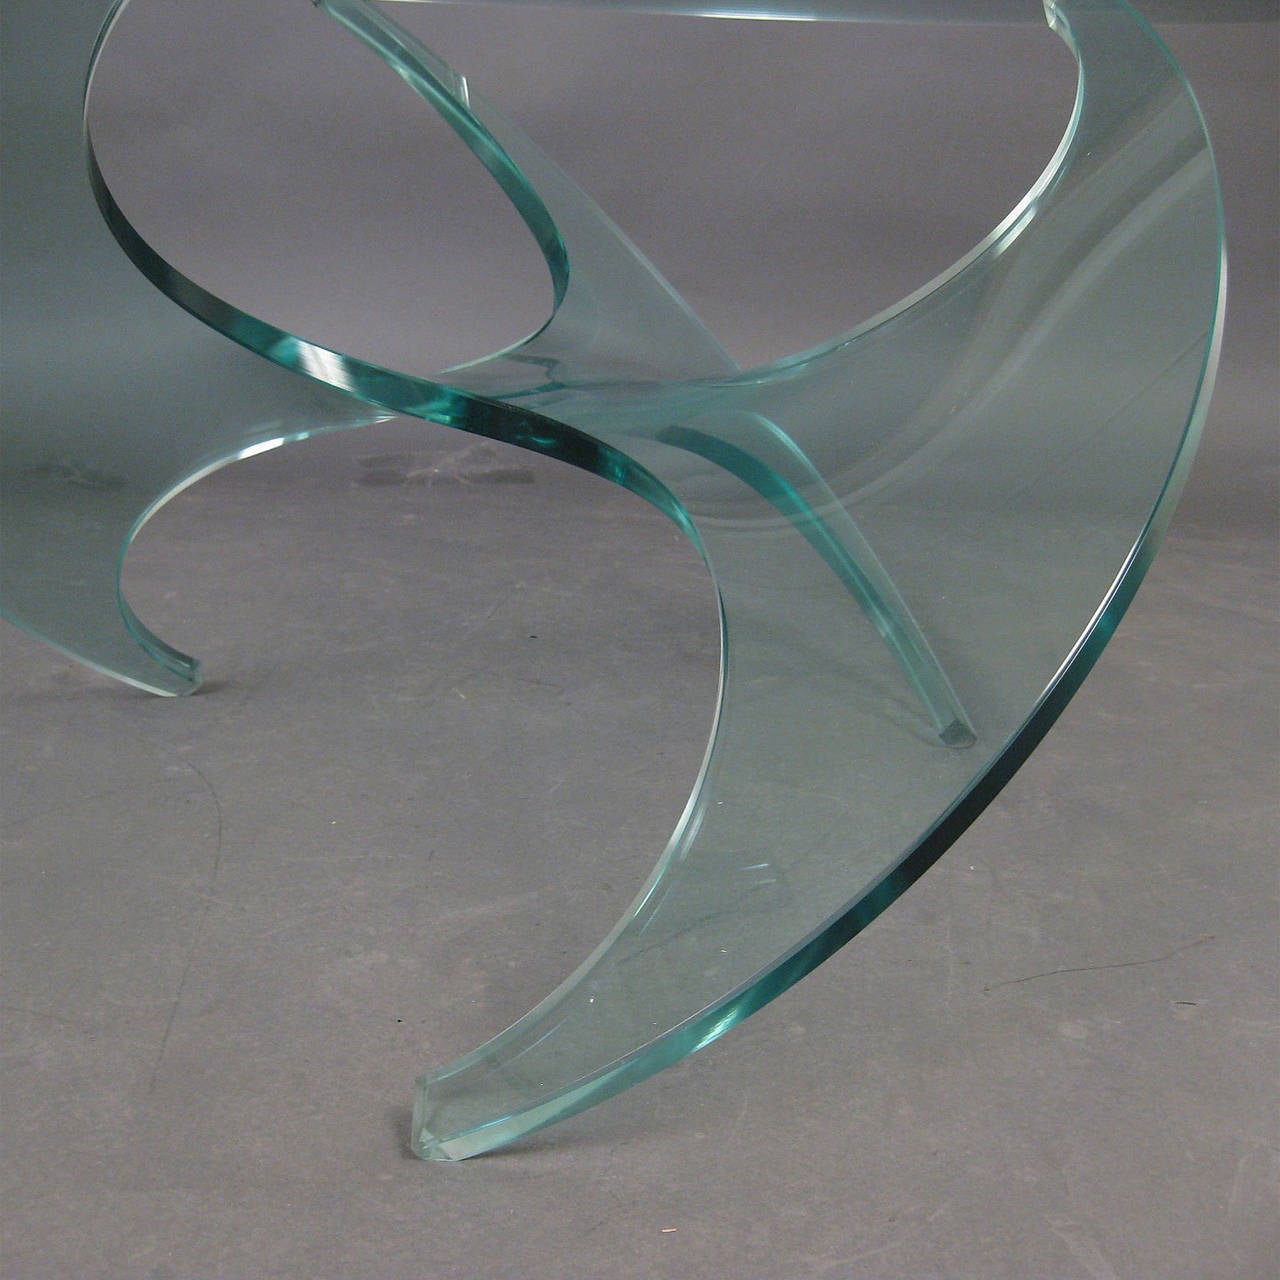 Knut Hesterberg's 1964 design for Ronald Schmitt.
Model K9 Glass